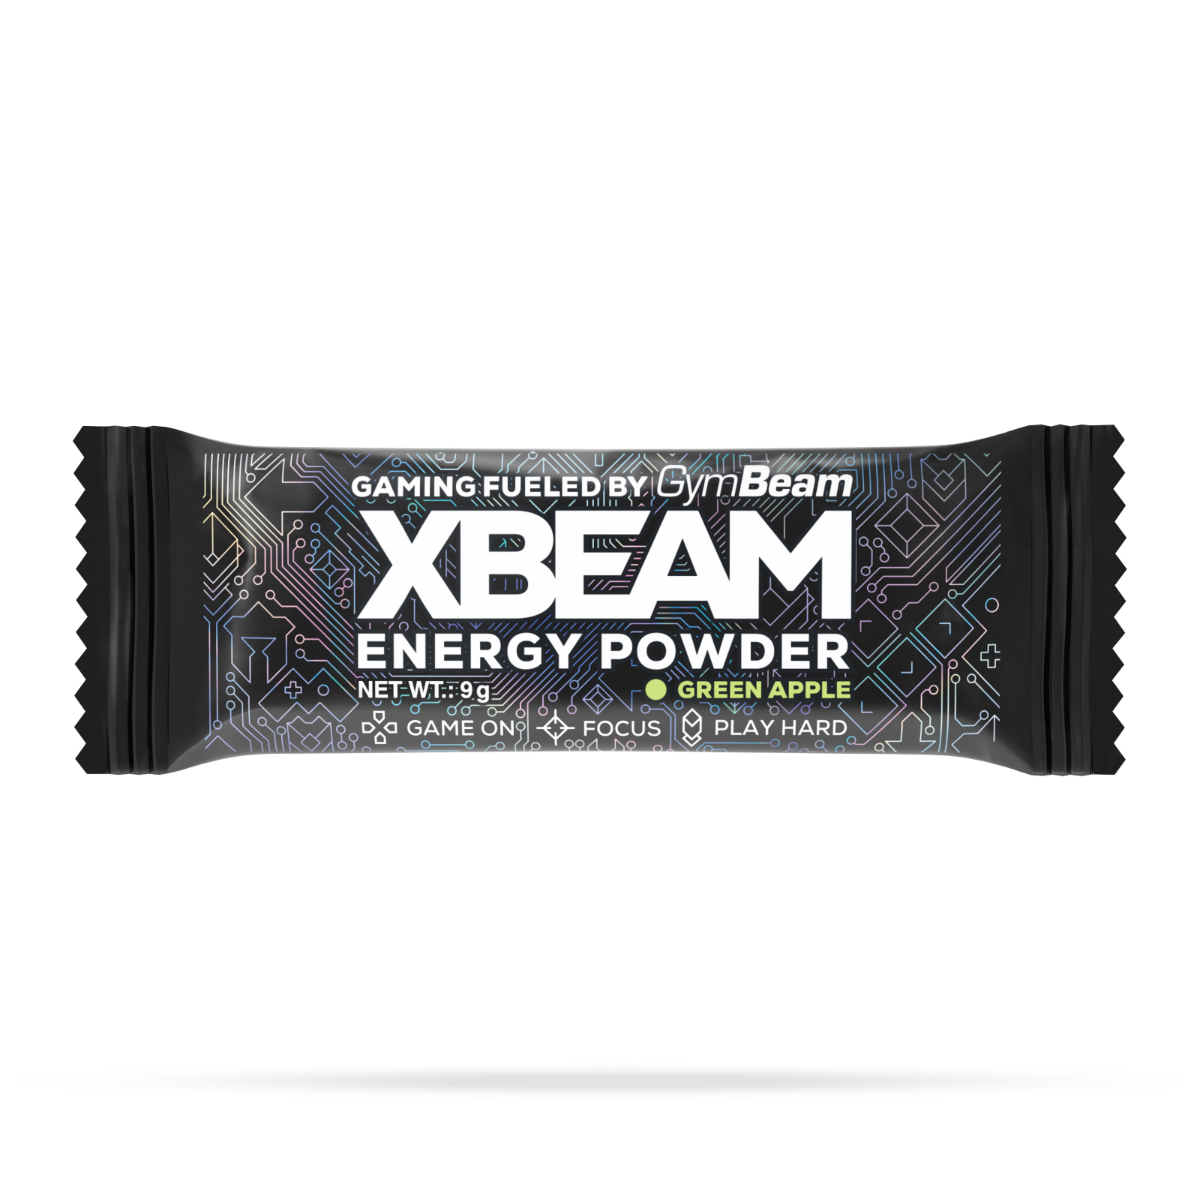 Vzorek Energy Powder - XBEAM jahoda kiwi 9 g